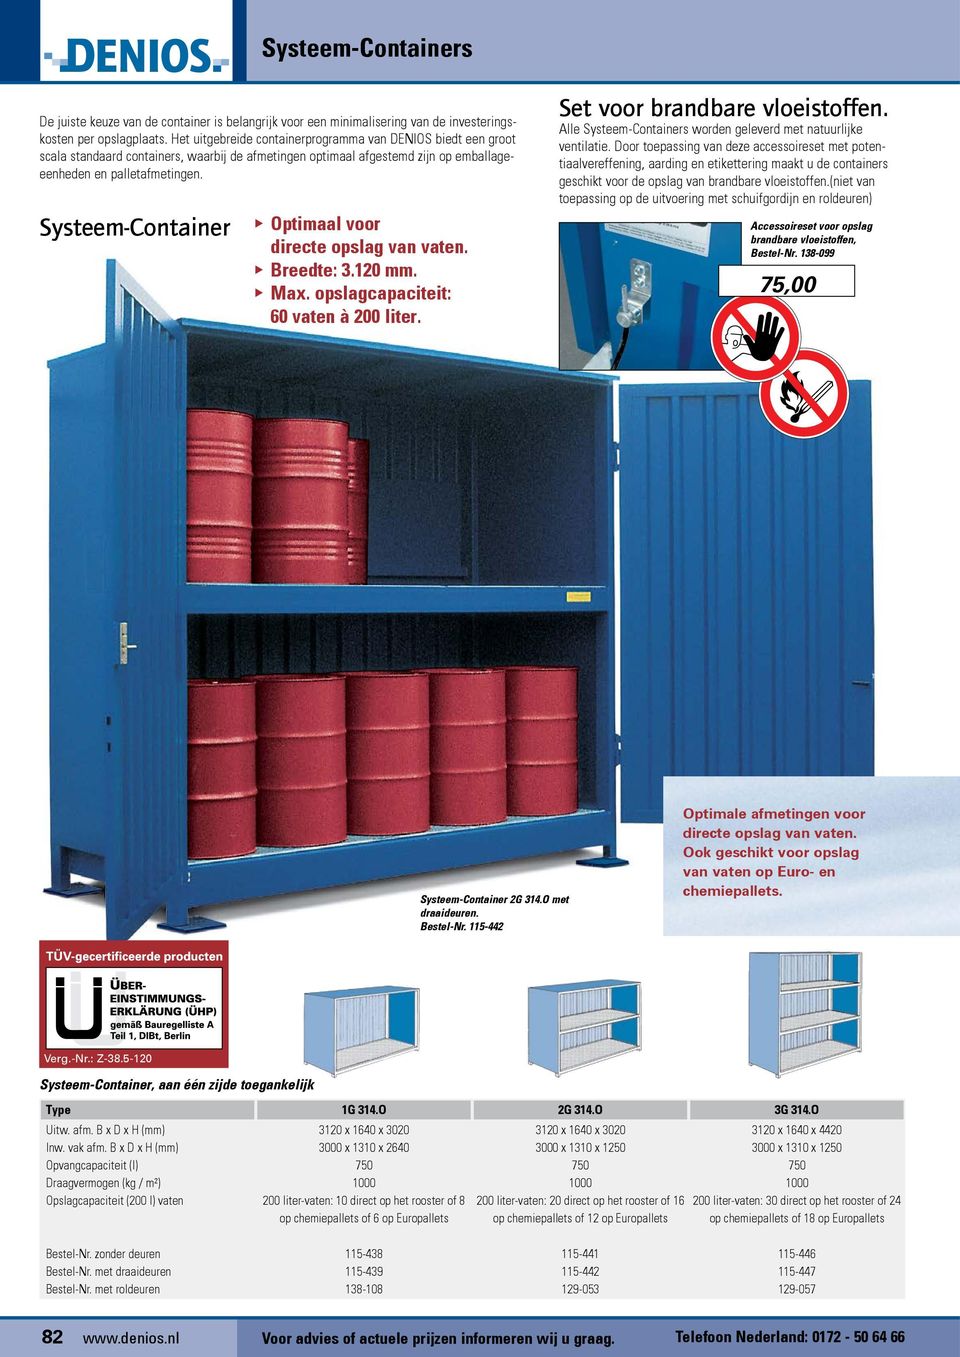 Systeem-Container Optimaal voor directe opslag van vaten. Breedte: 3.120 mm. Max. opslagcapaciteit: 60 vaten à 200 liter. Set voor brandbare vloeistoffen.